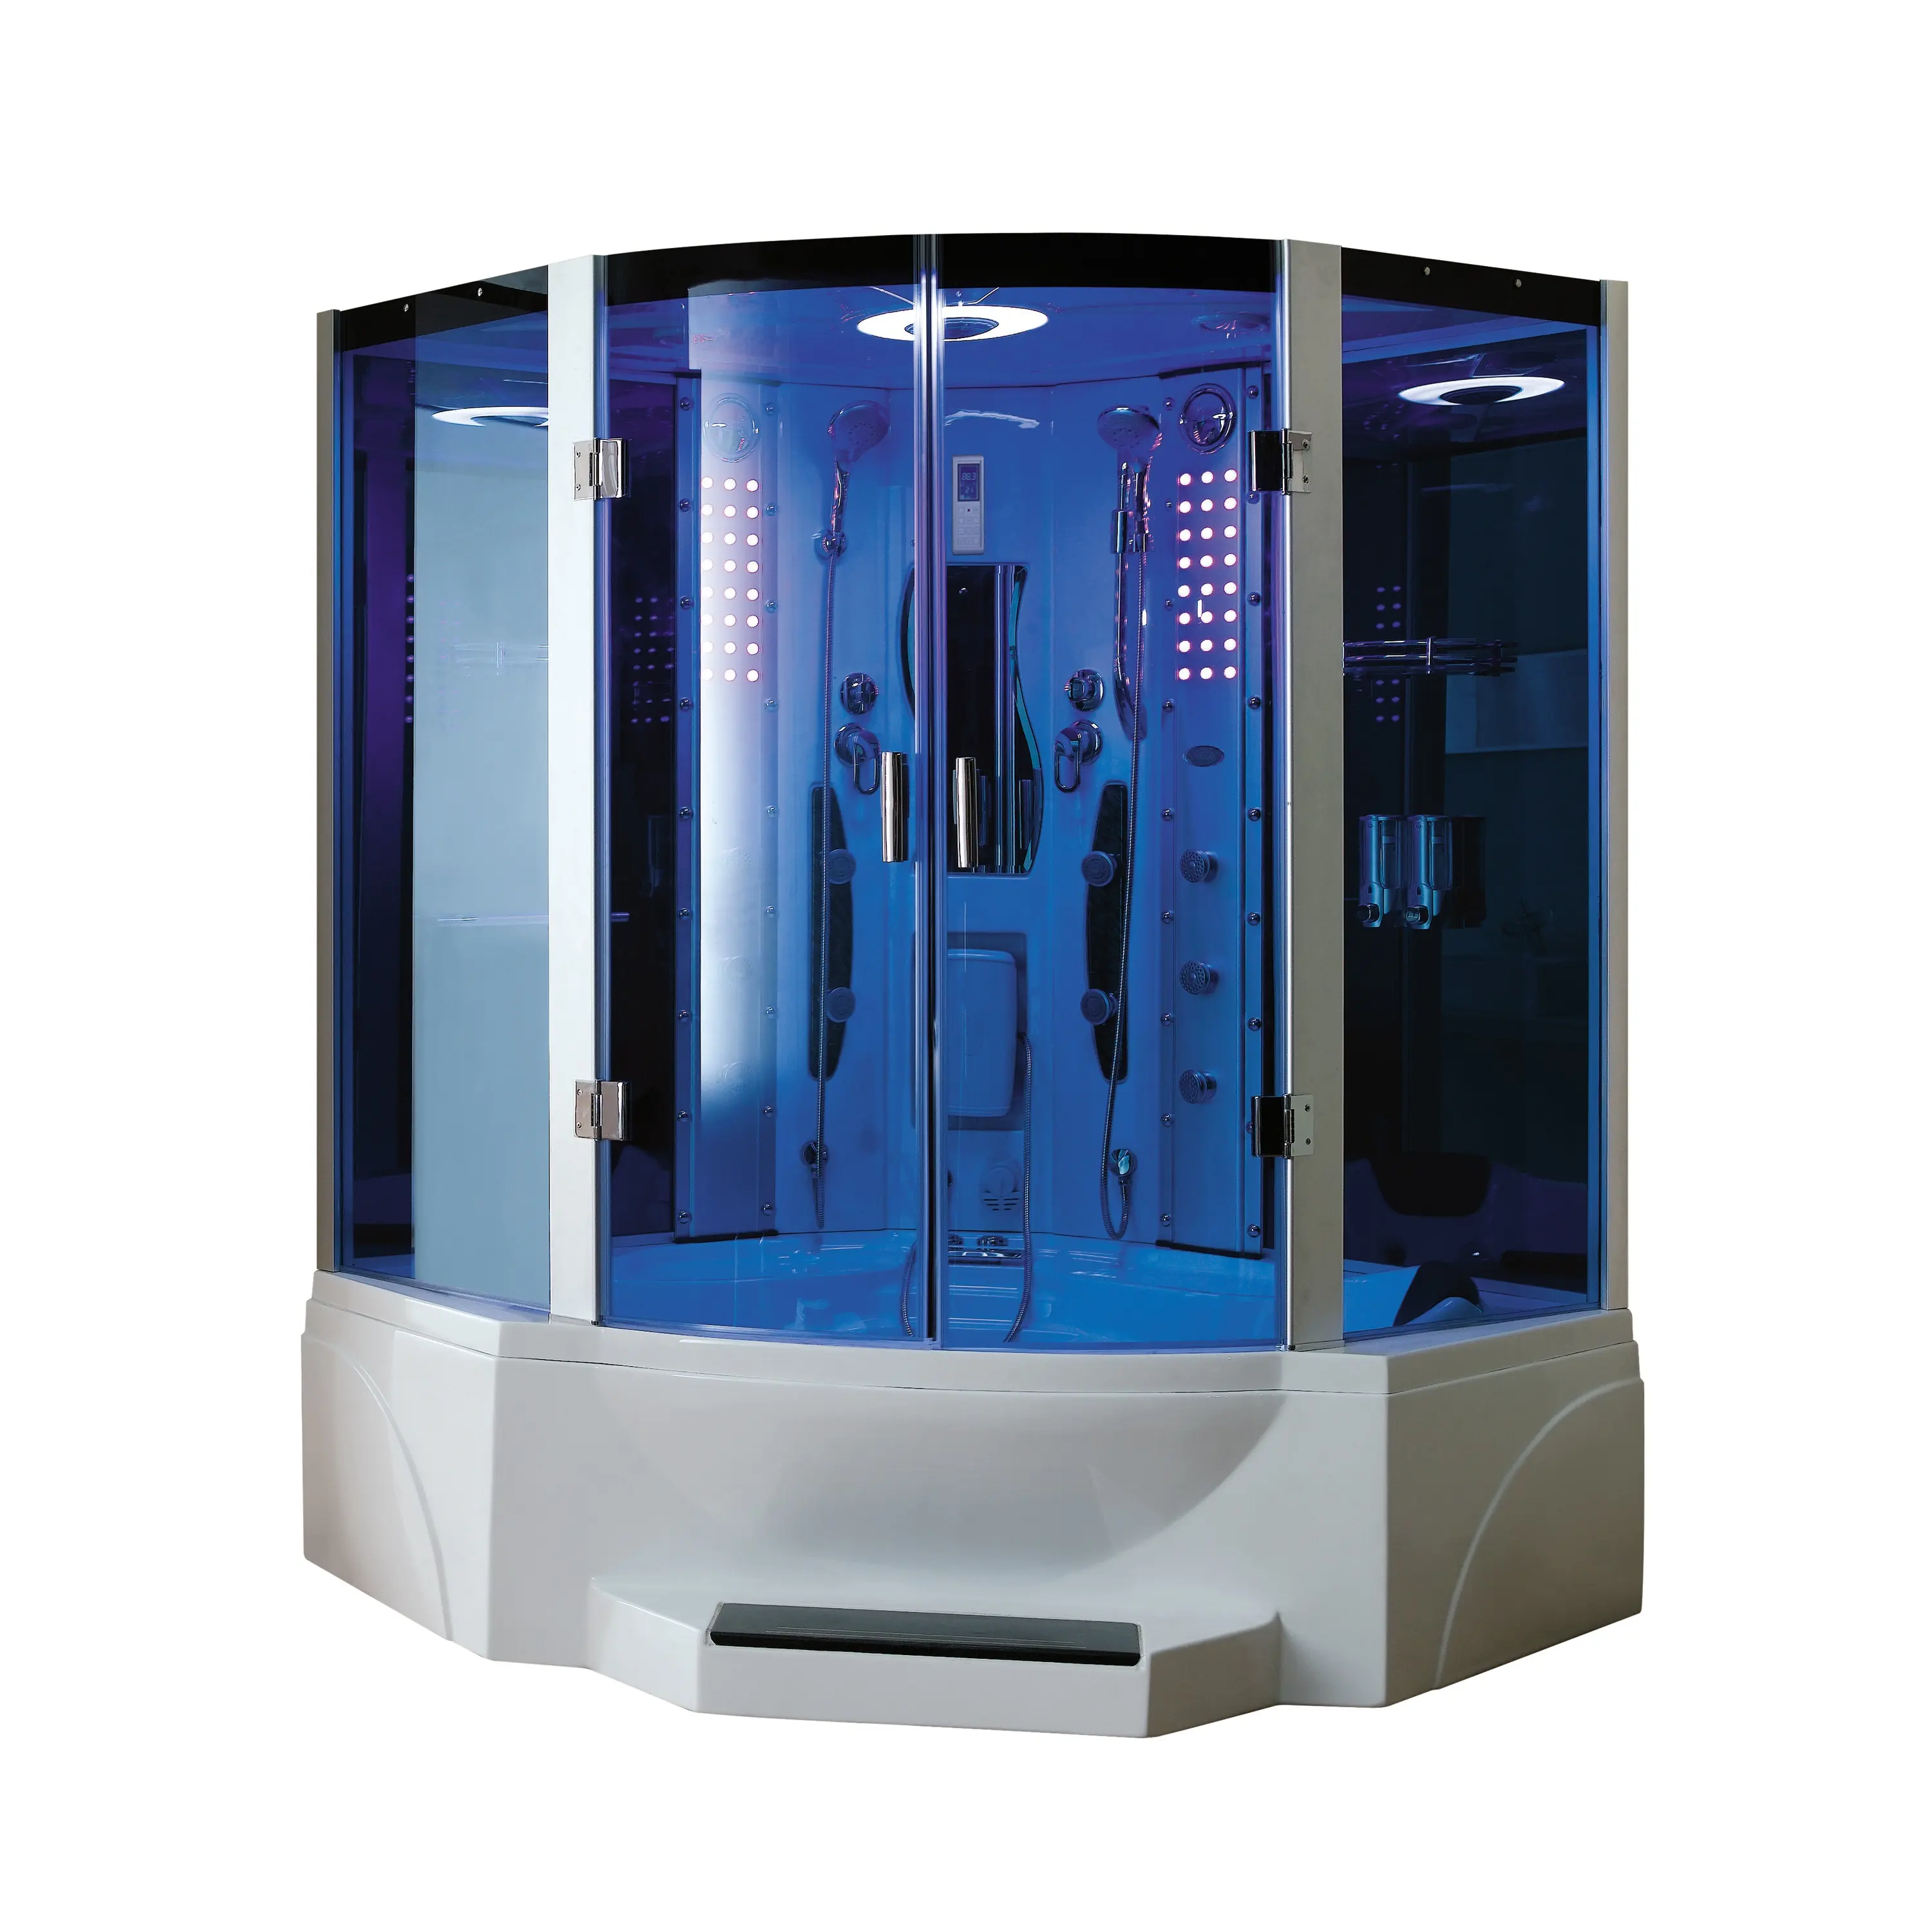 ห้องอาบน้ำอบไอน้ำกระจกสีฟ้า Mexda ห้องอบไอน้ำ; อ่างอาบน้ำนวดพร้อมห้องอบไอน้ำ (CE ETL) WS-608P